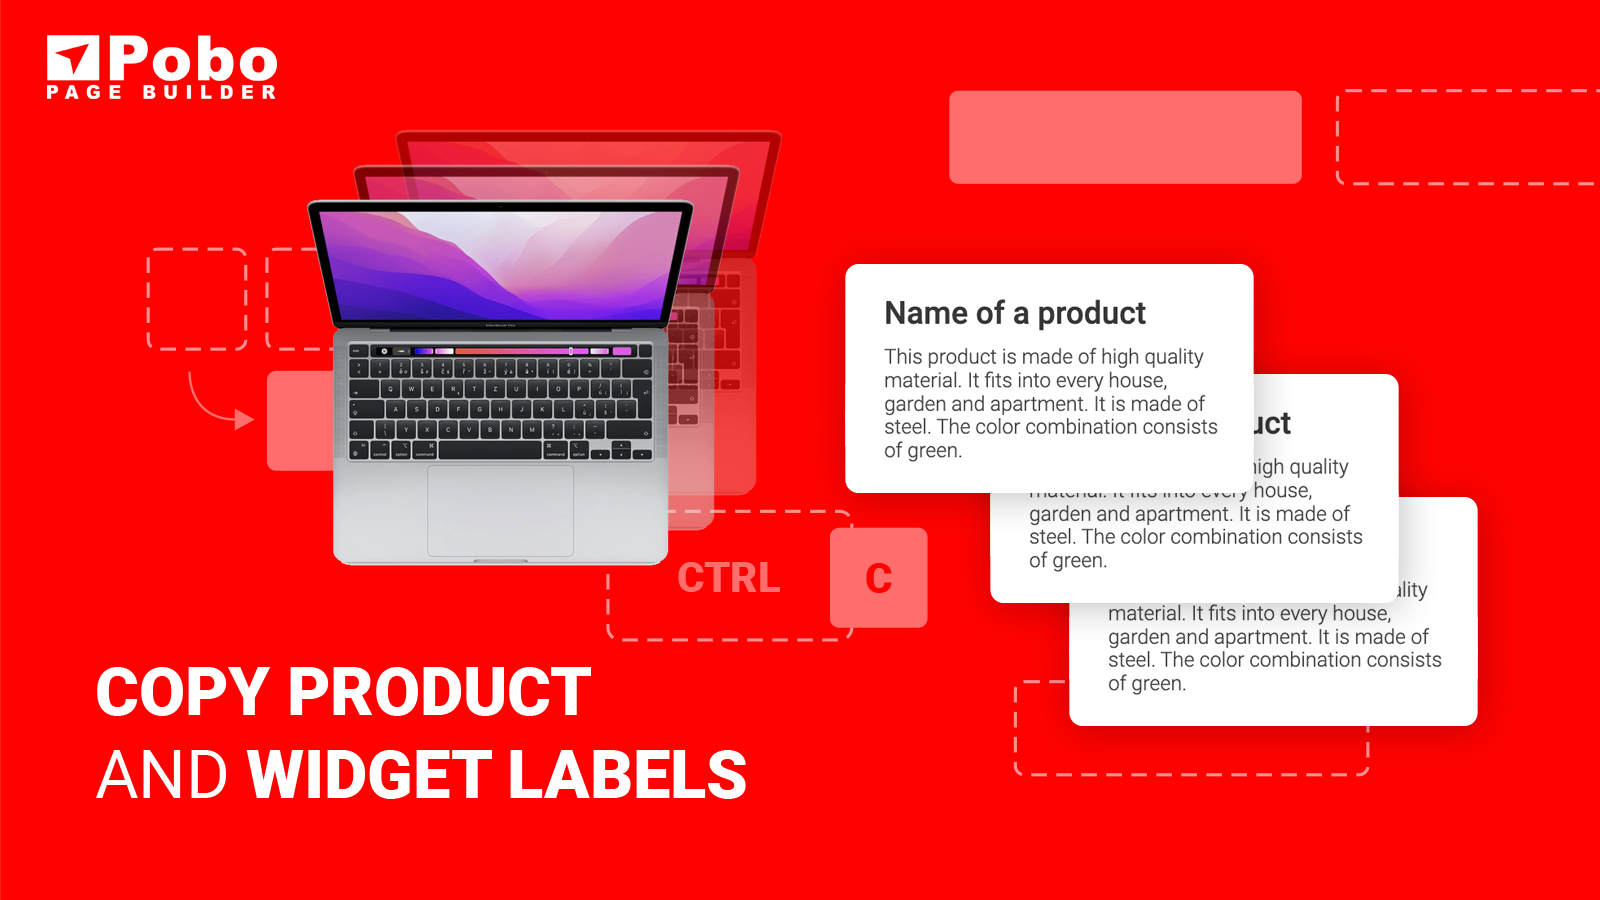 Produkt- und Widget-Etiketten kopieren. Über 50+ Widgets und Vorlagen